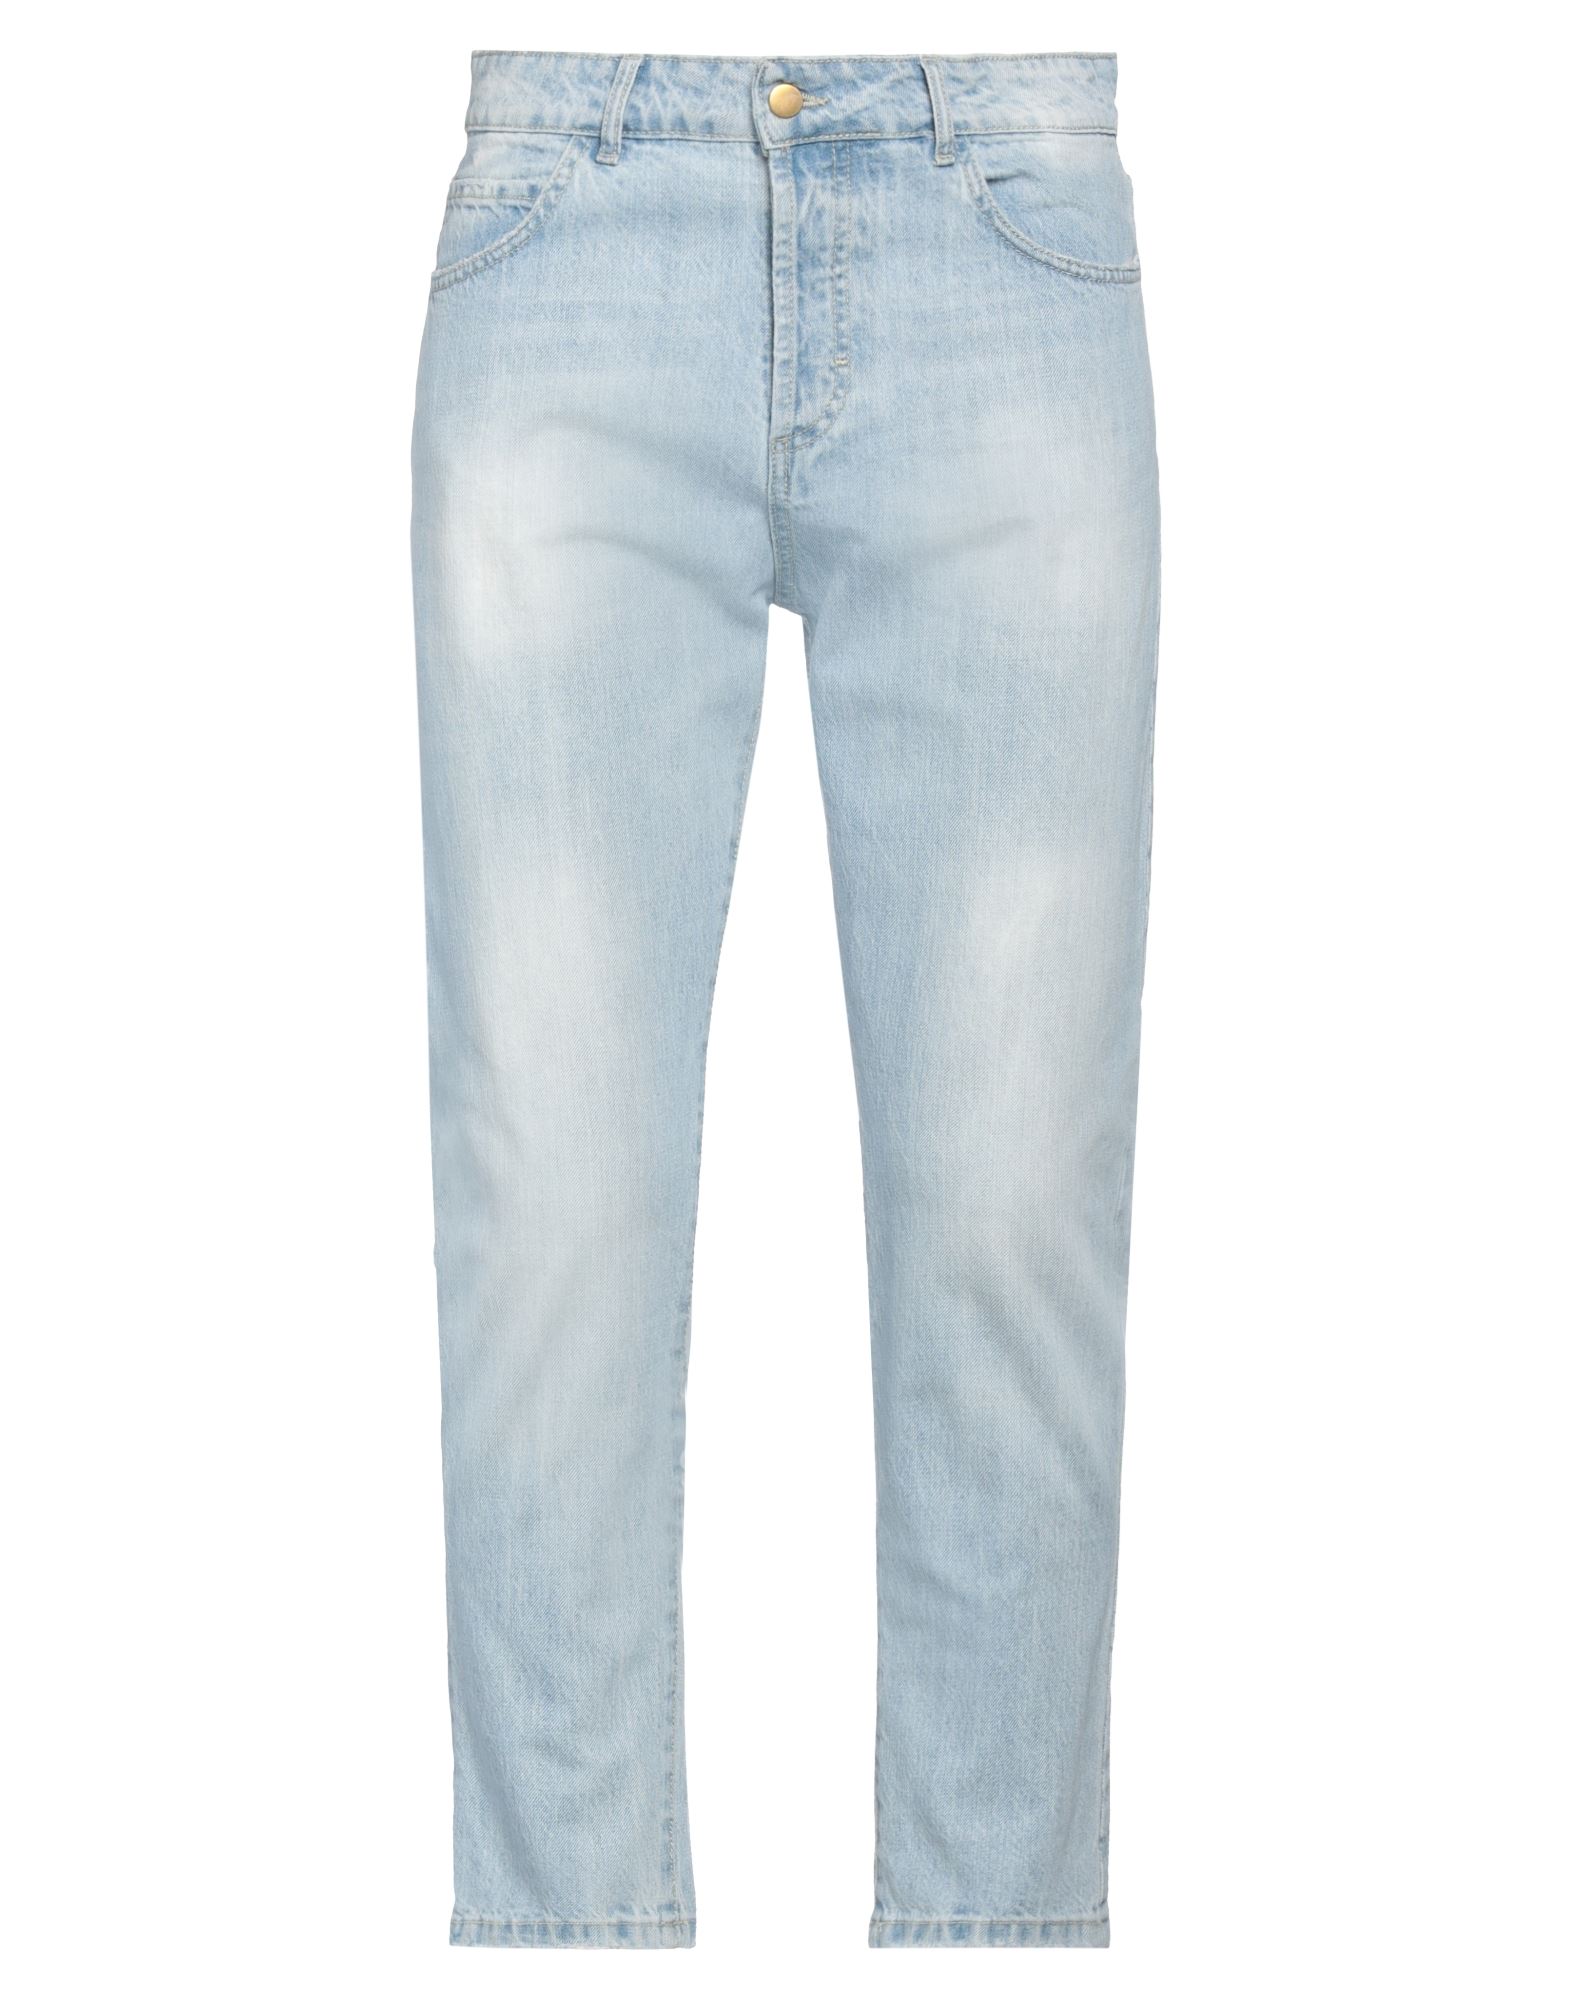 Beaucoup .., Man Jeans Blue Size 34 Textile Fibers